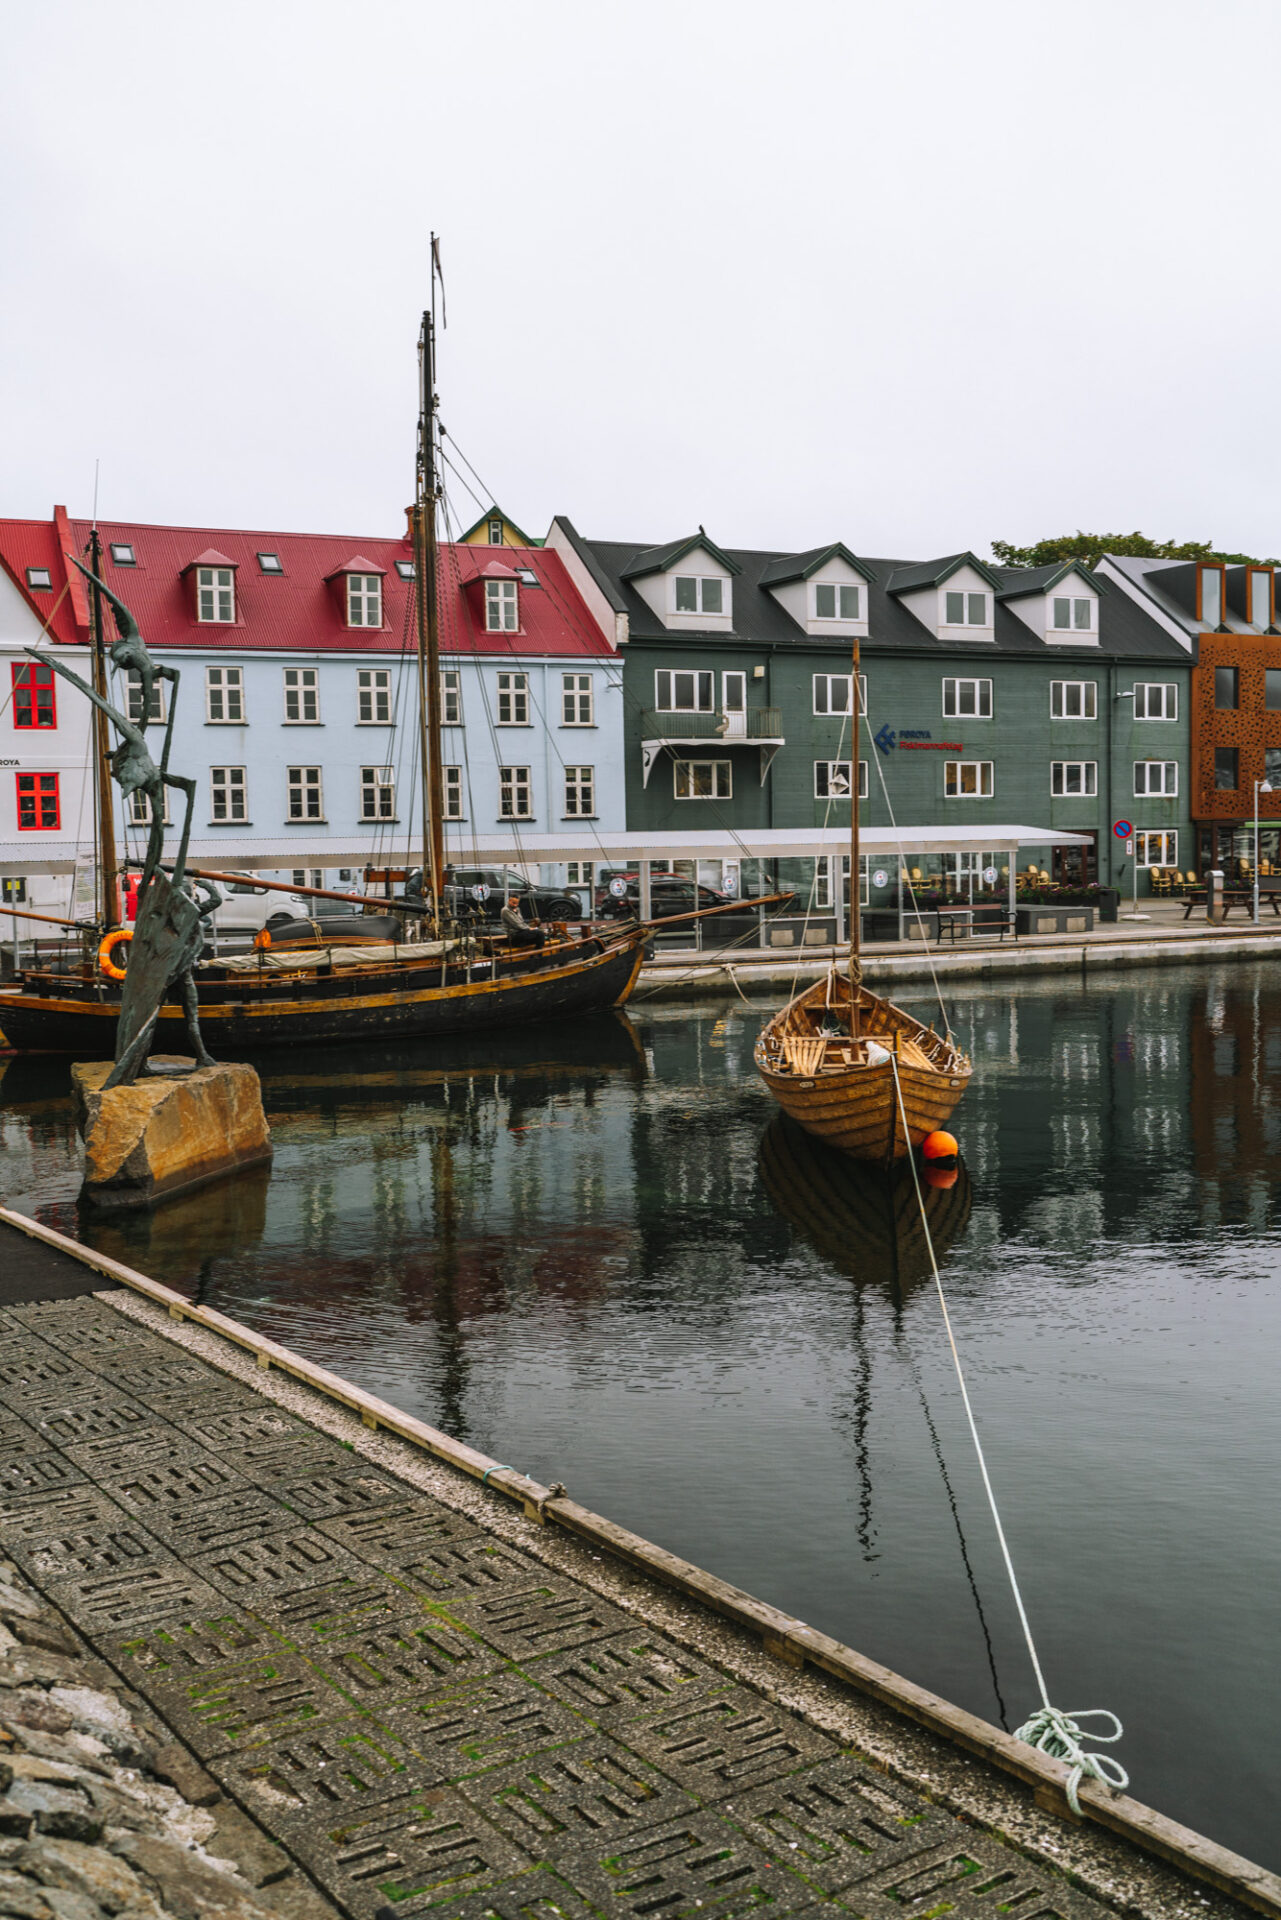 Torshavn Old Town, Faroe Islands